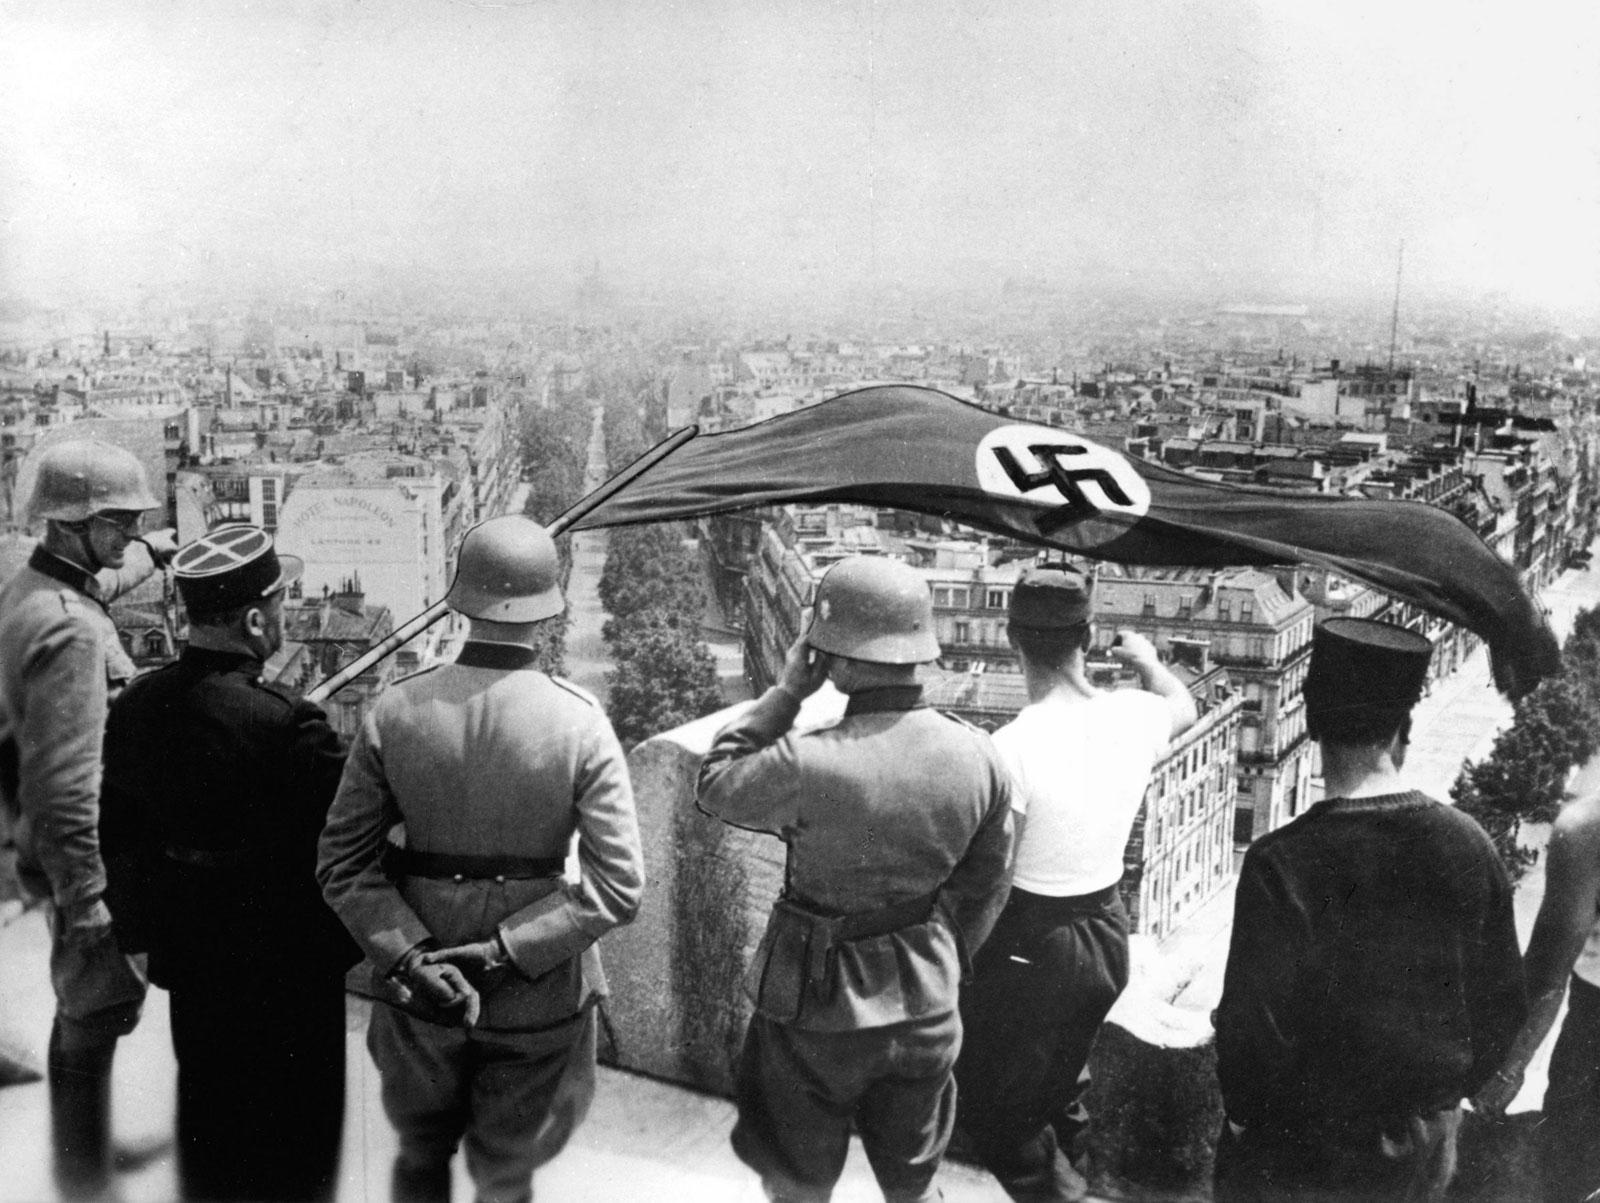 David Coquille on X: Le drapeau nazi flotte sur l'Arc de triomphe le 24  juin 1940. Un policier français regarde.  / X